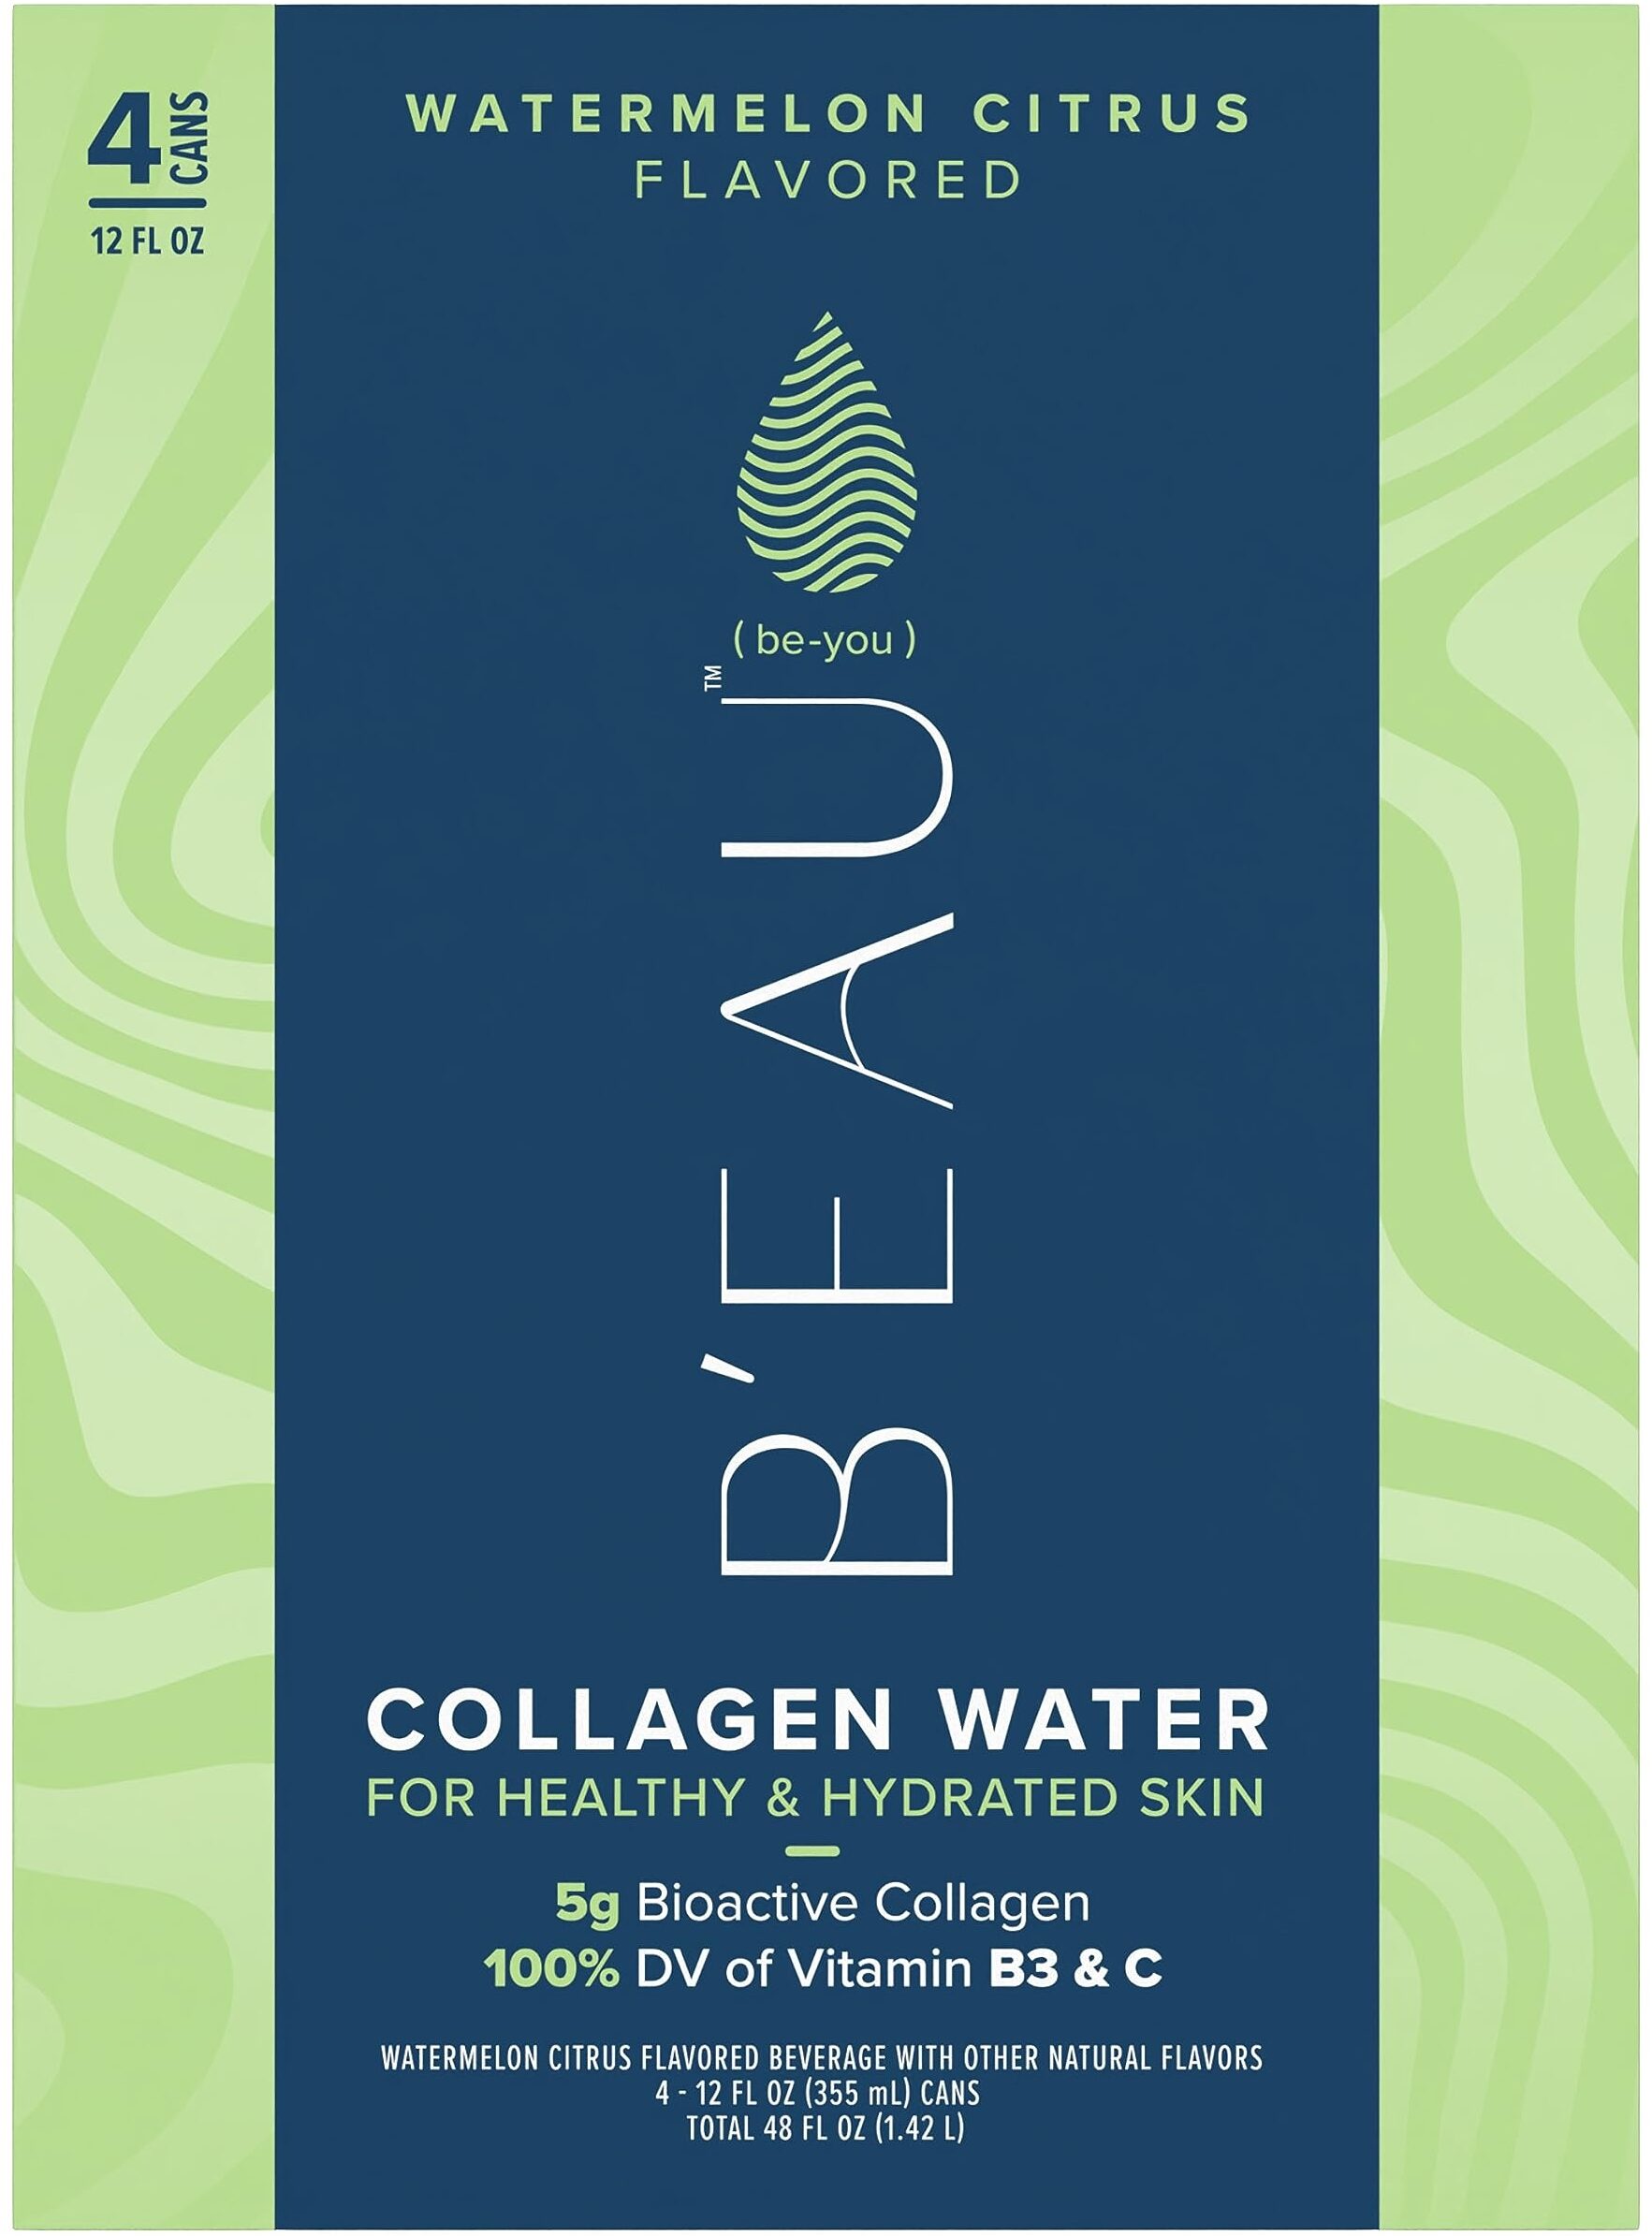 B'EAU Watermelon Citrus Collagen Water - Tuote - en